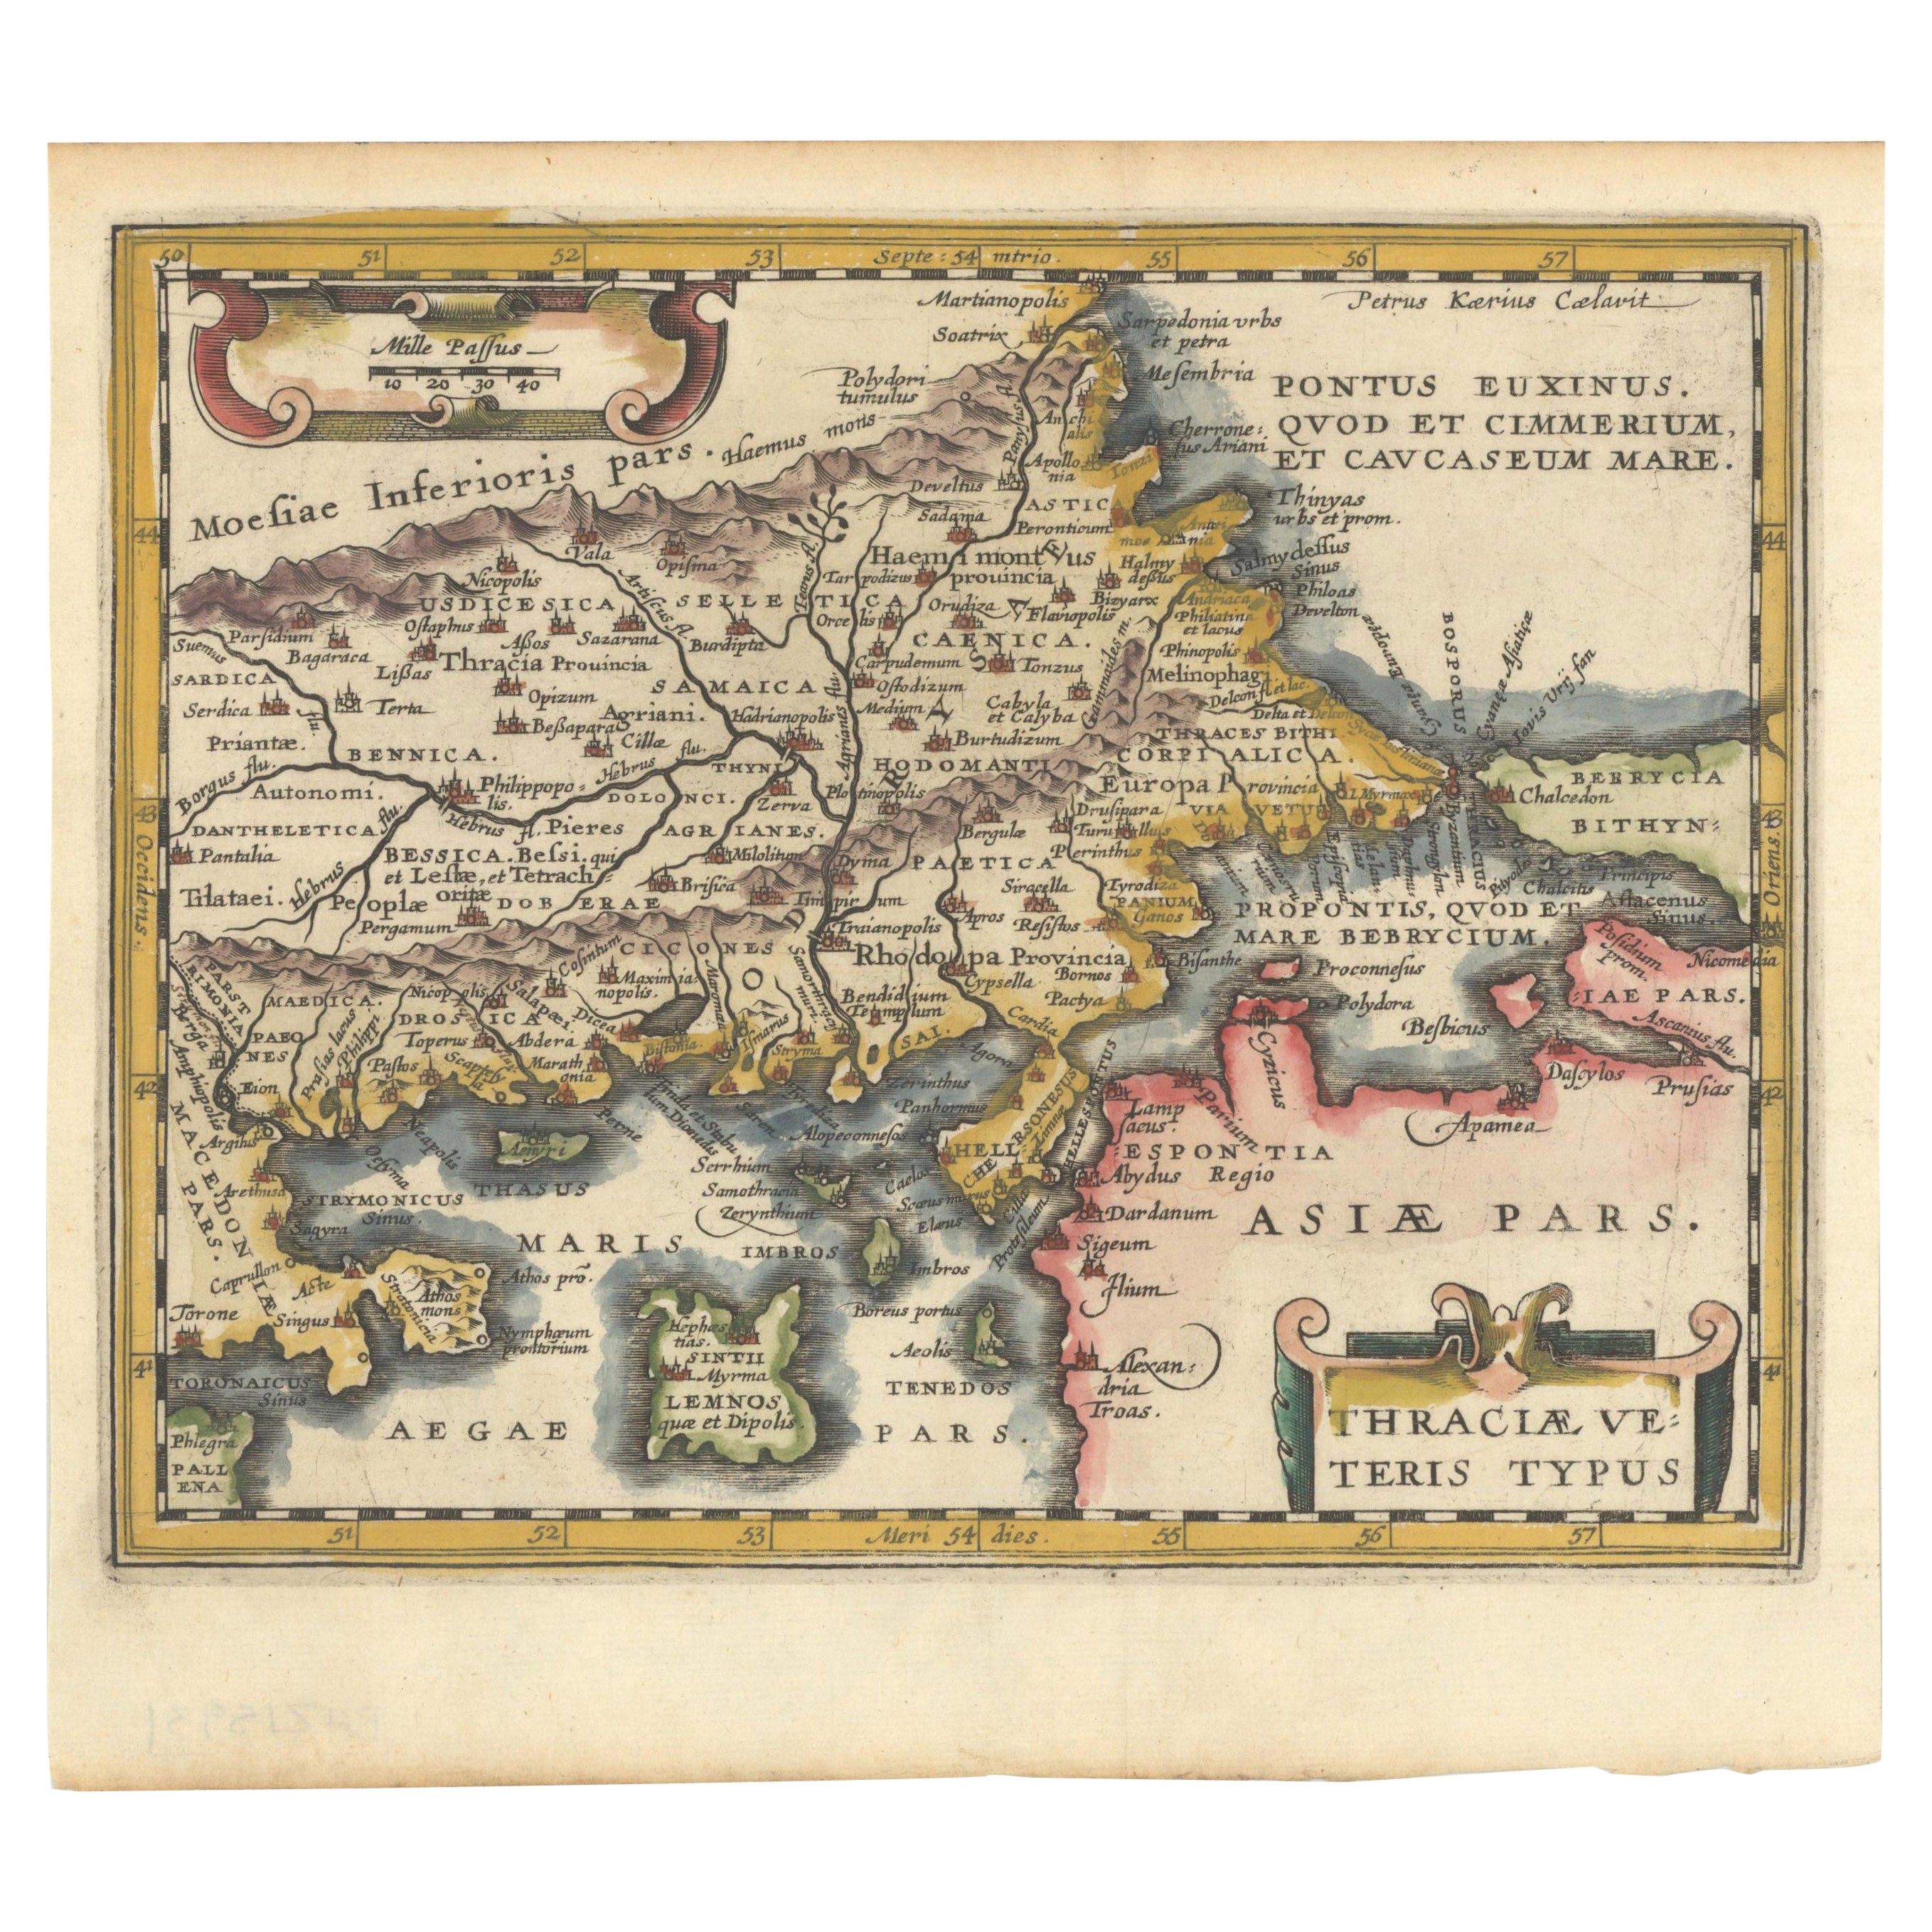 Carte originale du nord-est de la Grèce et du nord-ouest de la Turquie, publiée en 1661